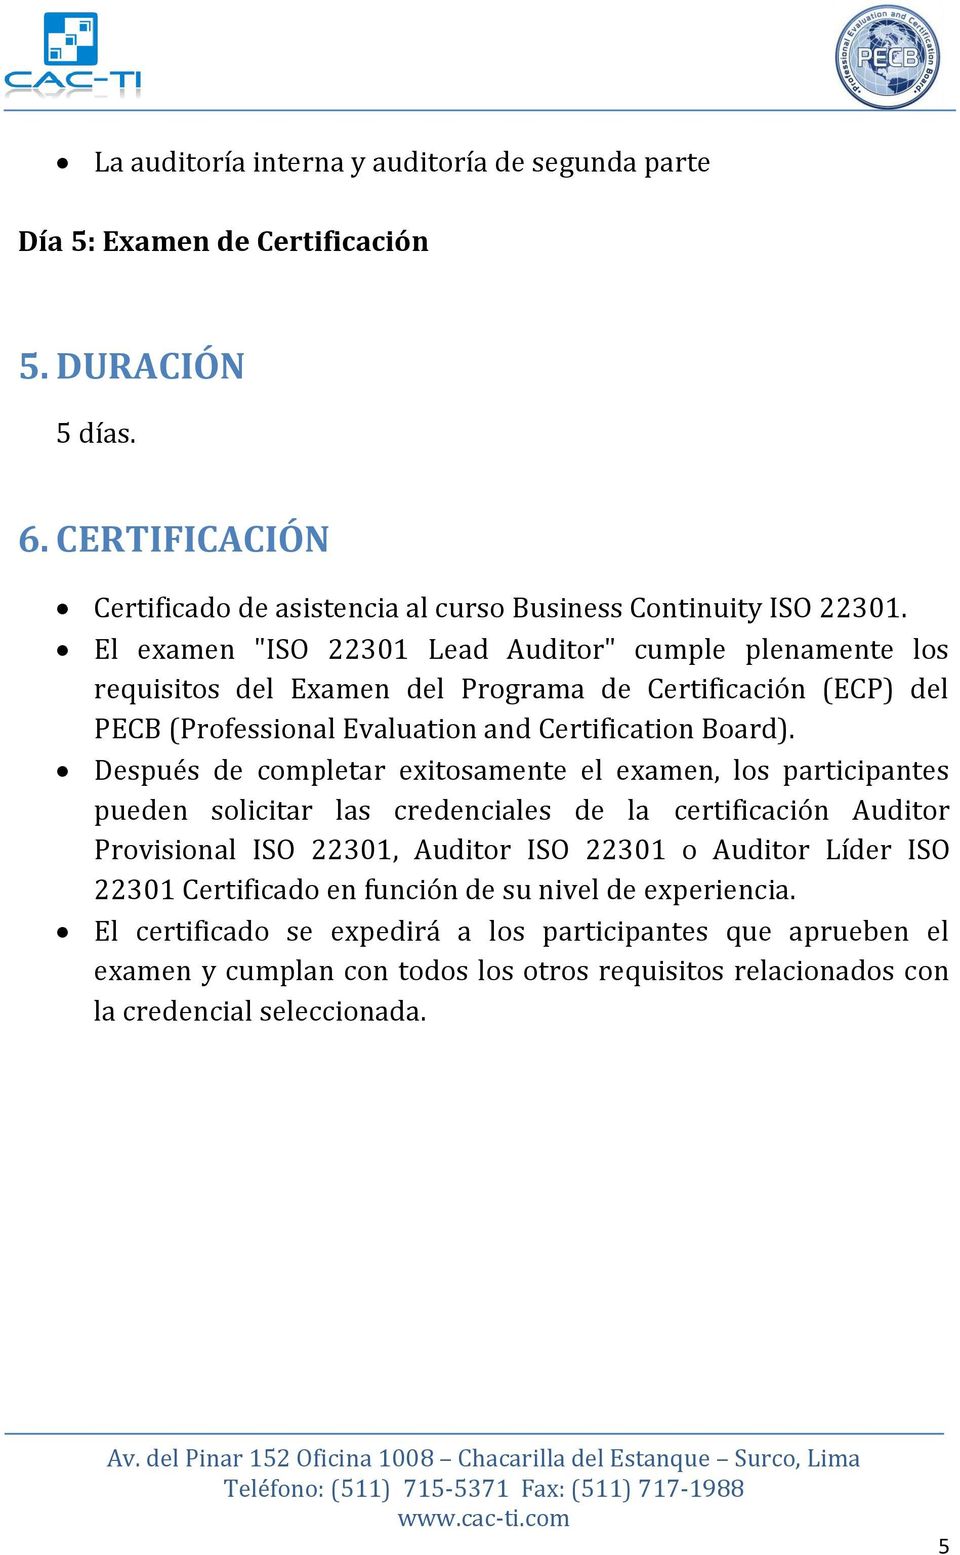 Después de completar exitosamente el examen, los participantes pueden solicitar las credenciales de la certificación Auditor Provisional ISO 22301, Auditor ISO 22301 o Auditor Líder ISO